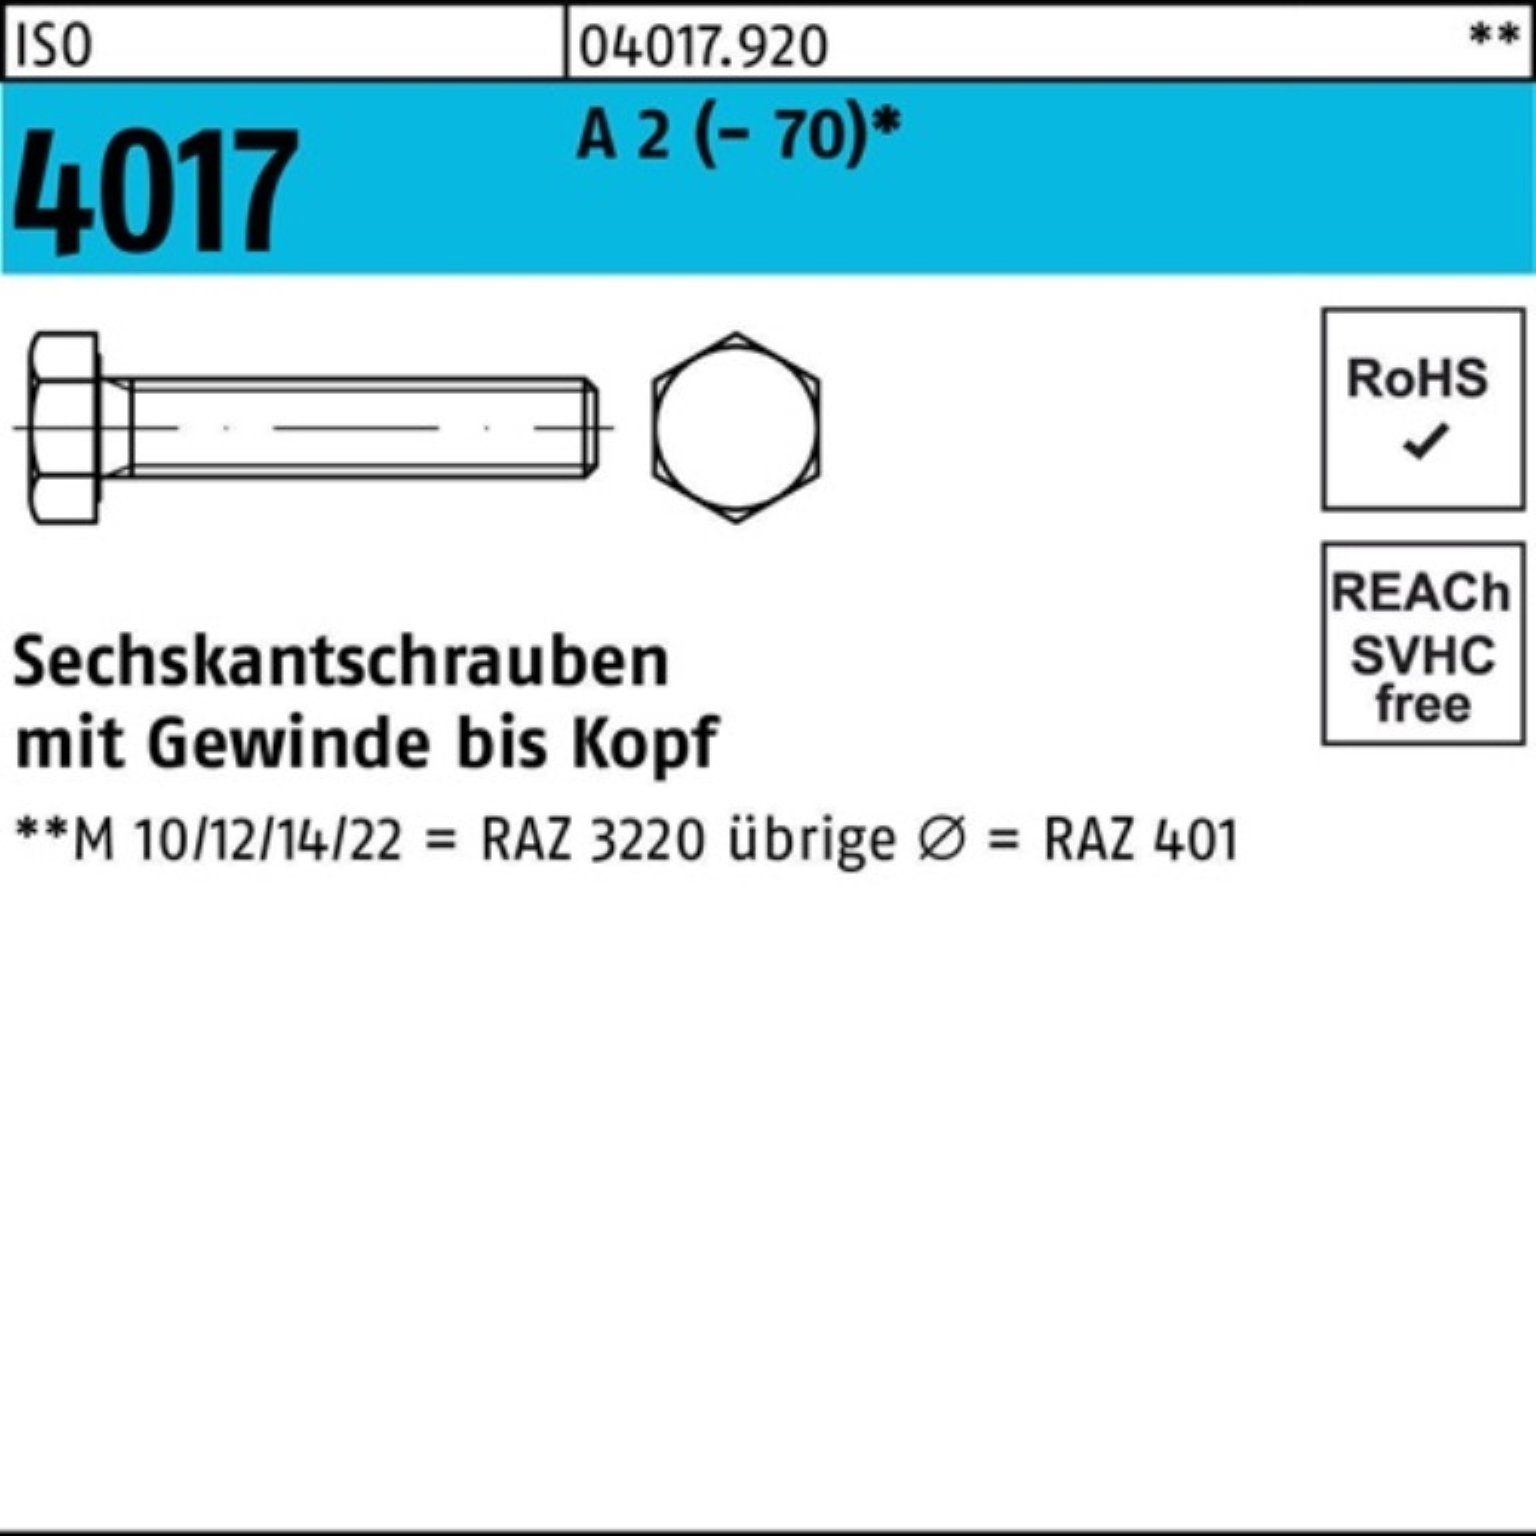 Pack Stück 4017 ISO Bufab (70) Sechskantschraube 2 A 100 100er VG Sechskantschraube M6x 55